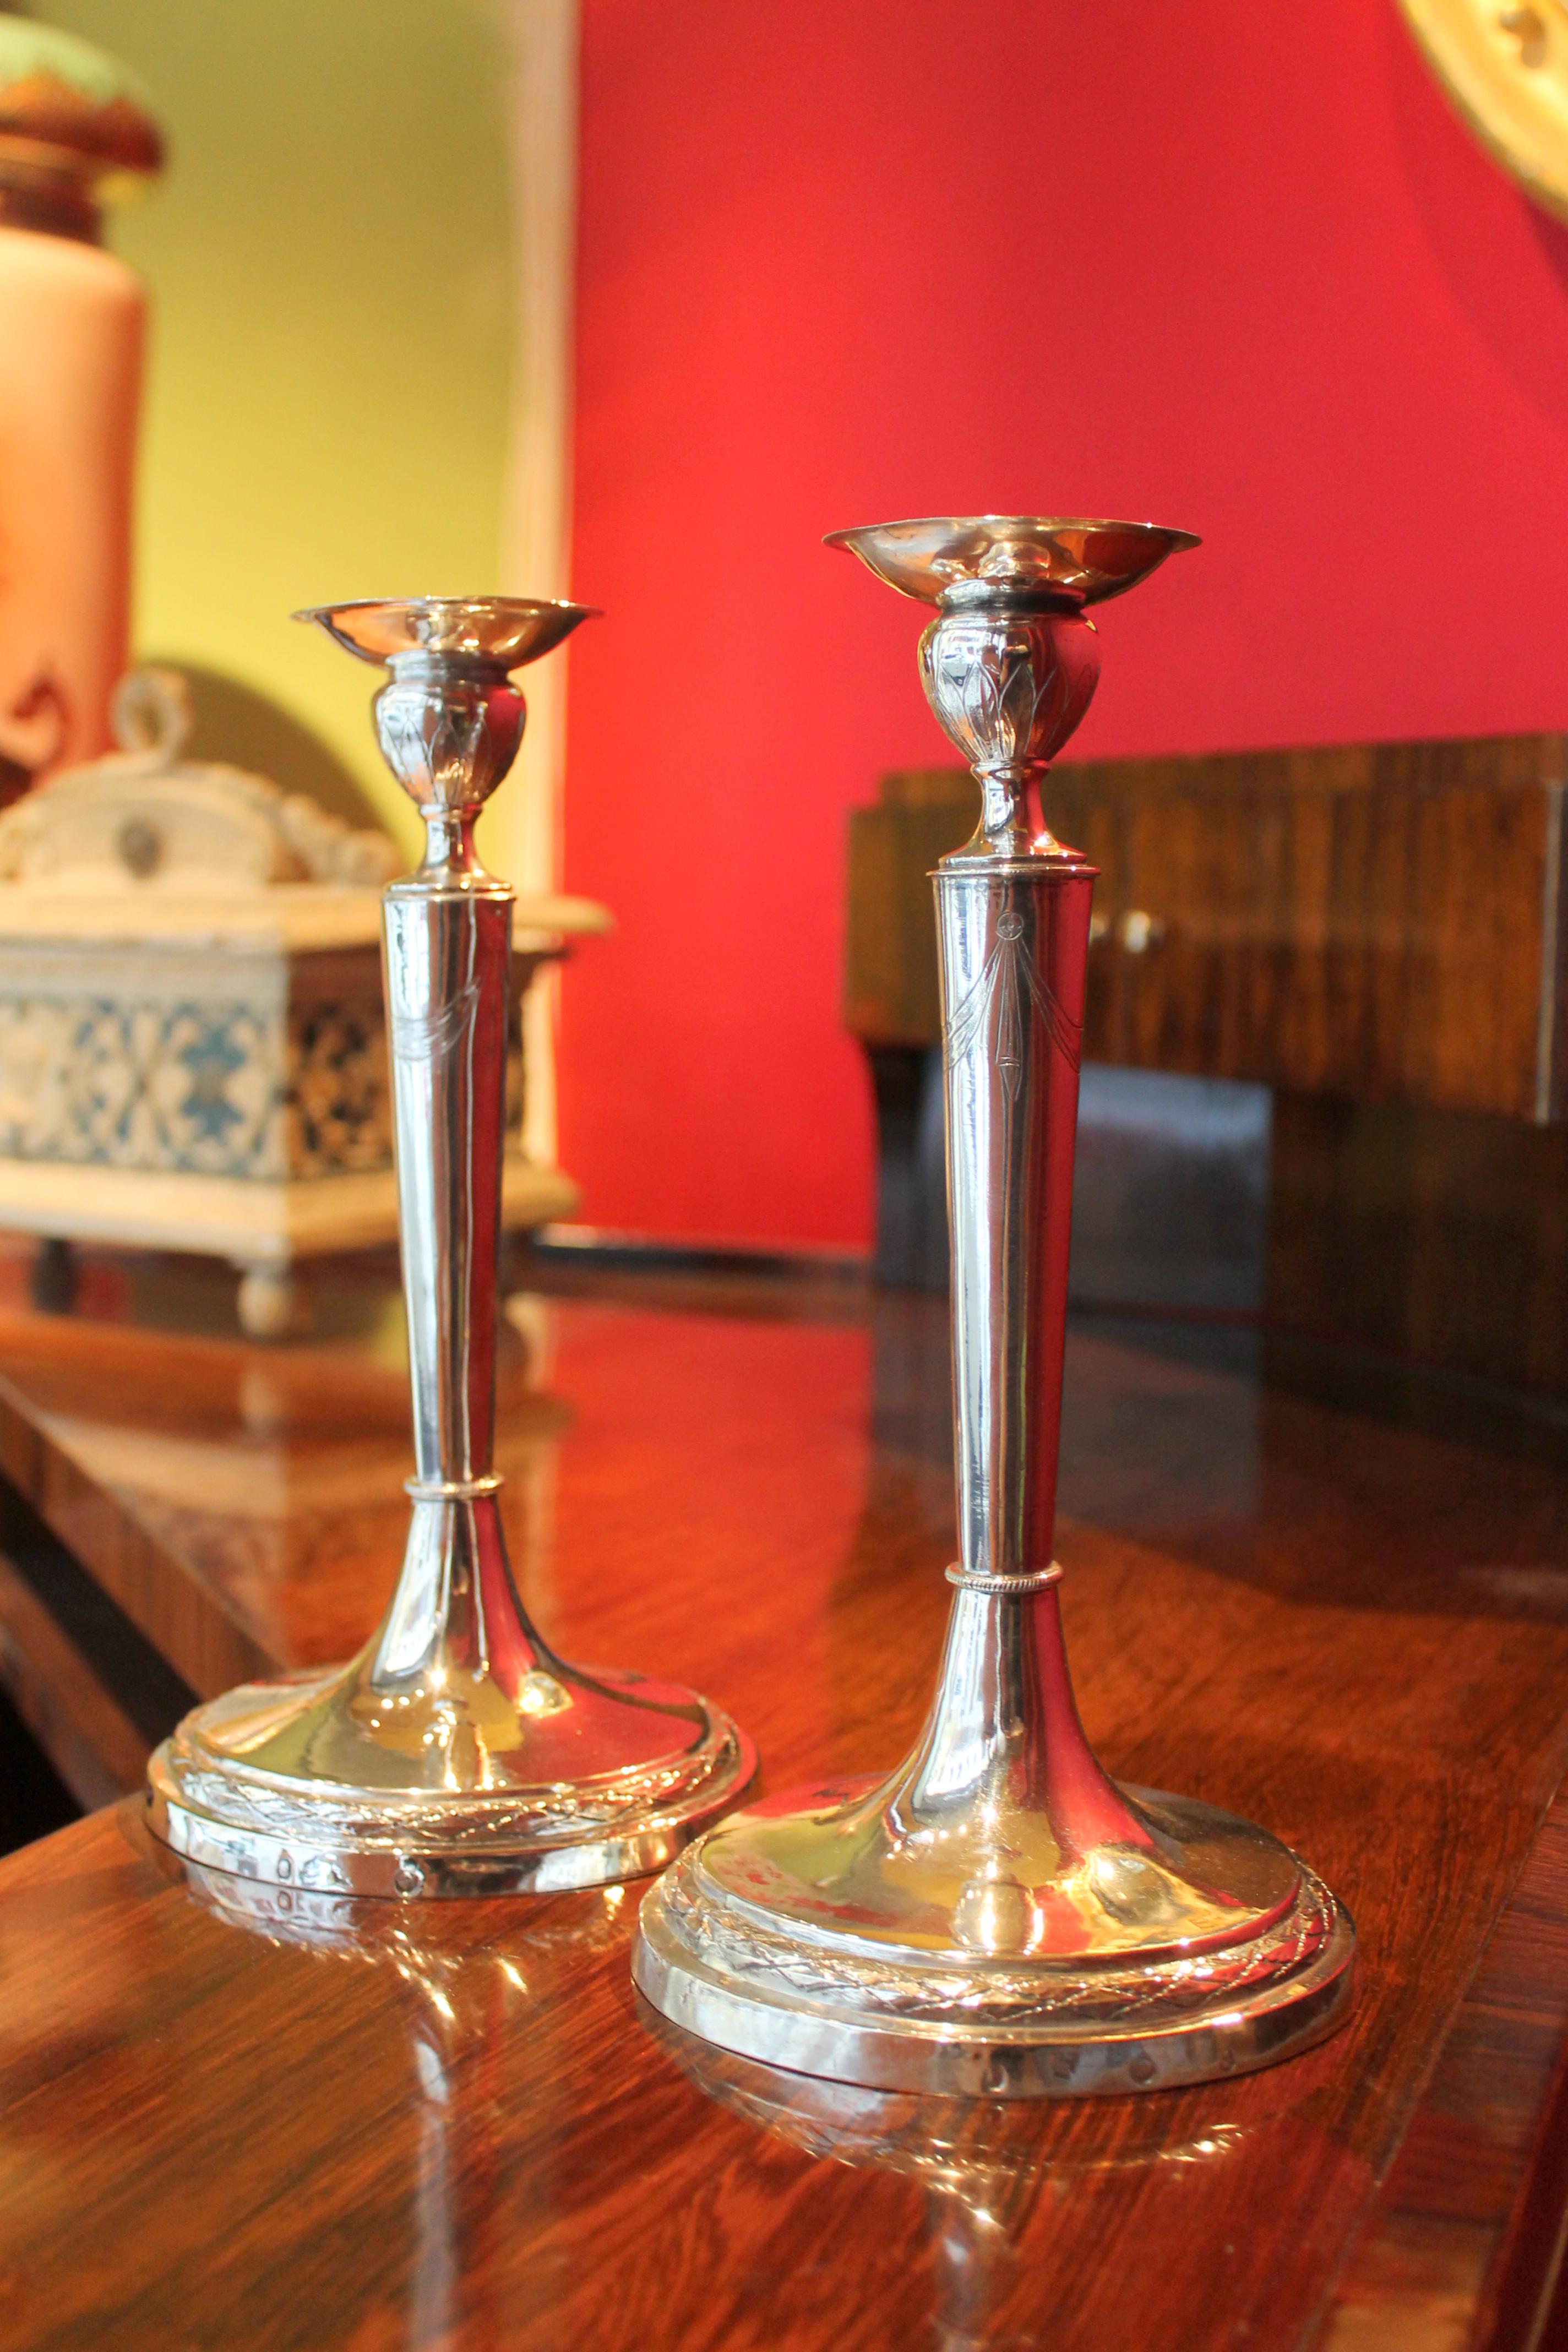 Cette paire d'élégants chandeliers en argent ciselé de la période Empire italien (1811-1817) du 19e siècle présente un design et une forme simples mais élégants. 
La structure conique ornée de festons et de guirlandes repose sur une base ronde non